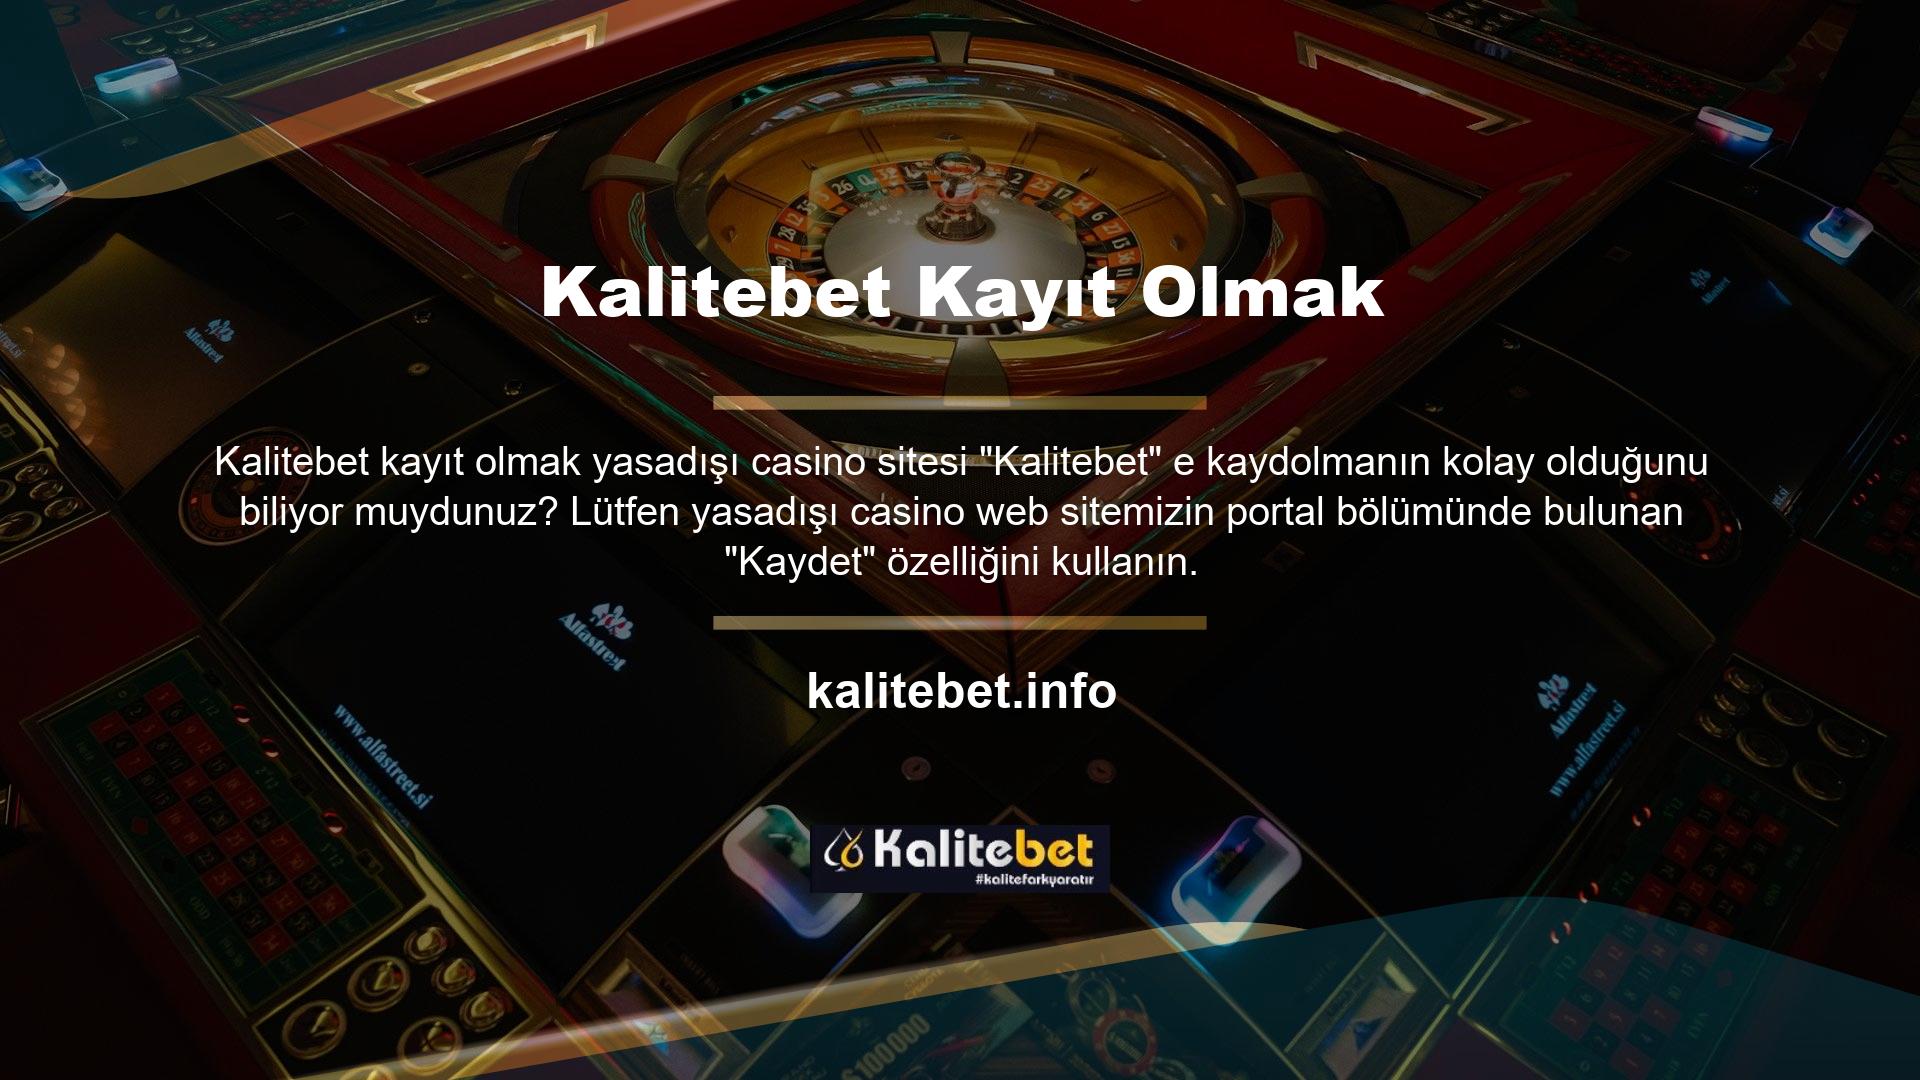 Casino web sitesi hesabınıza tek tıklamayla erişebilirsiniz